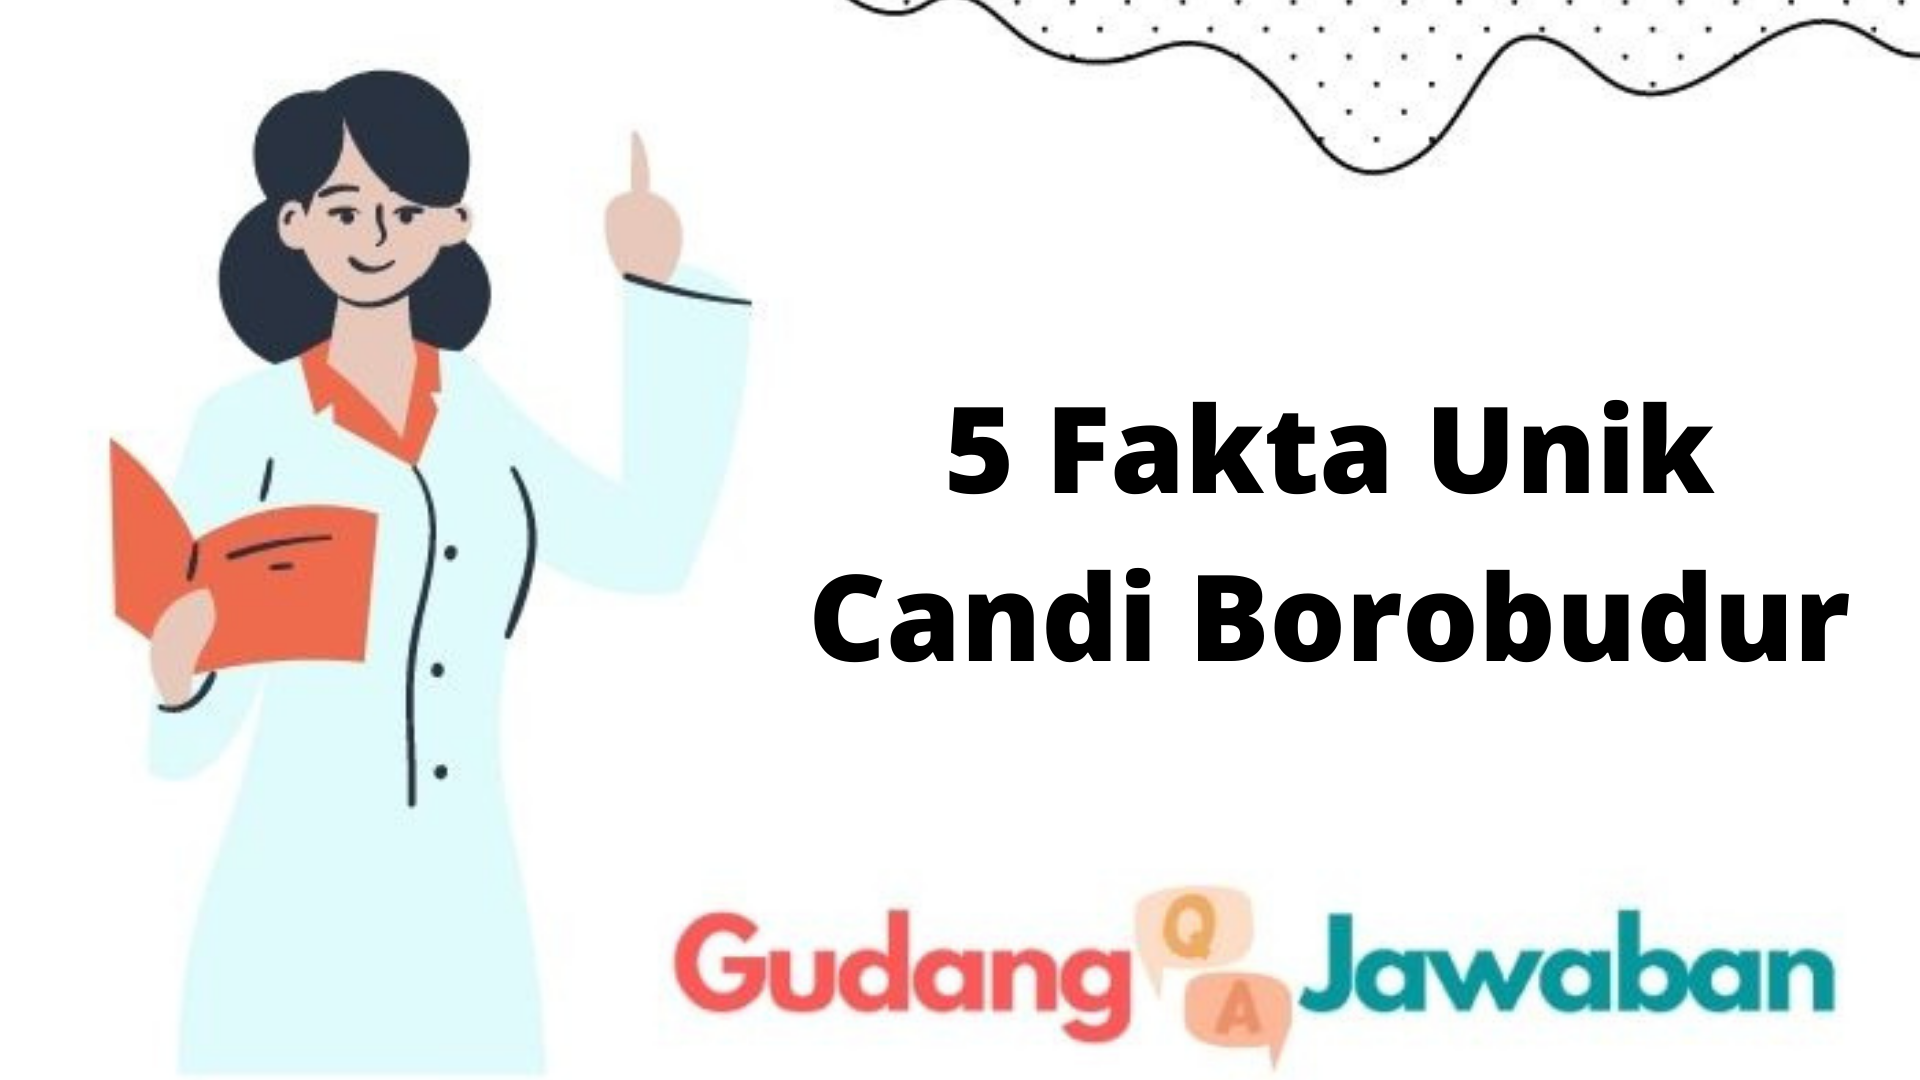 5 Fakta Unik Candi Borobudur